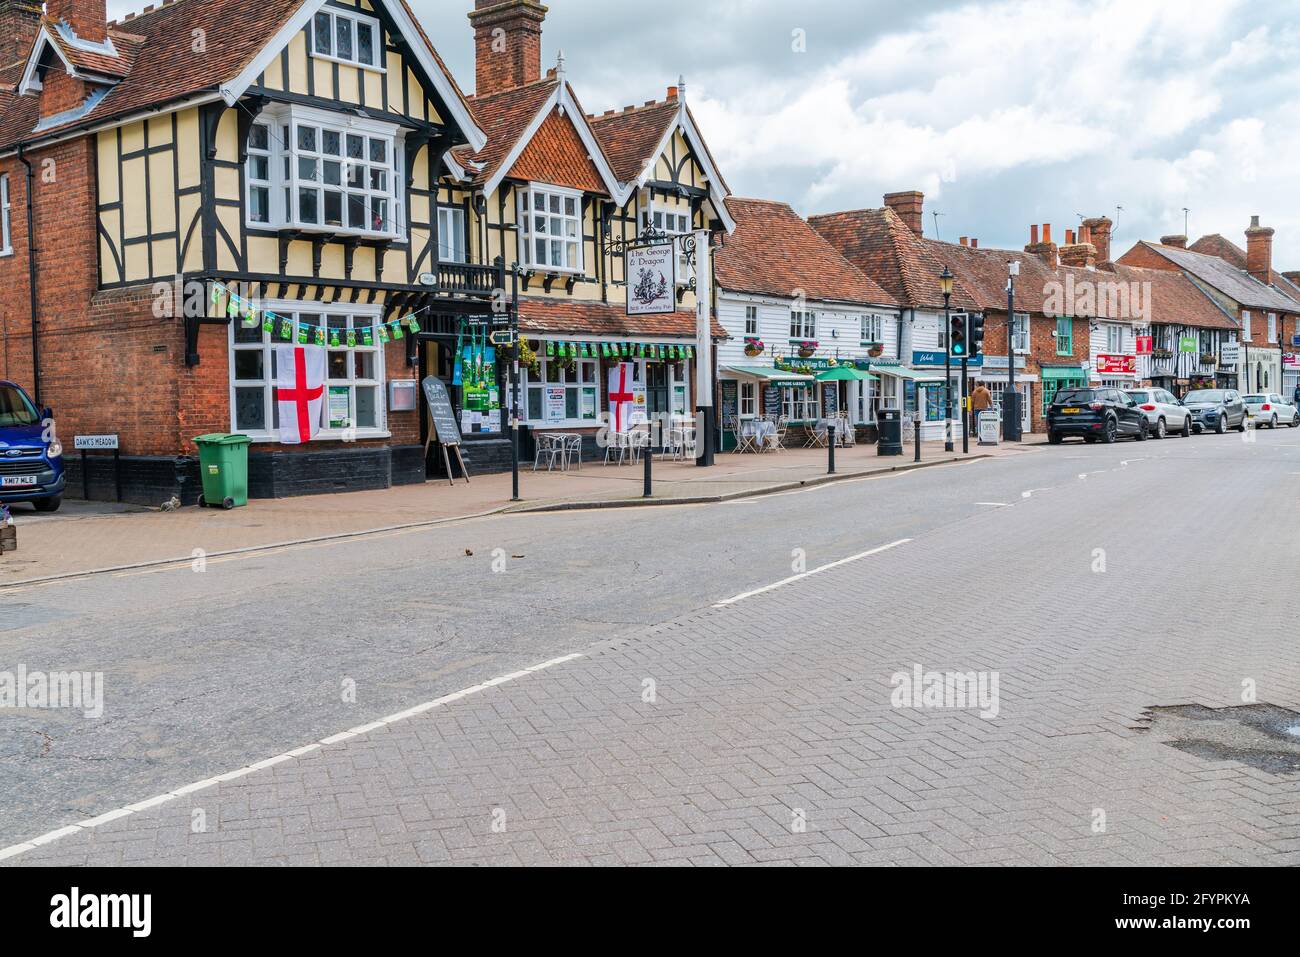 HEADCORN, Royaume-Uni - 26 MAI 2021 : vue sur la rue de Headcorn, un village et une paroisse civile dans le quartier de Maidstone dans le Kent. Banque D'Images